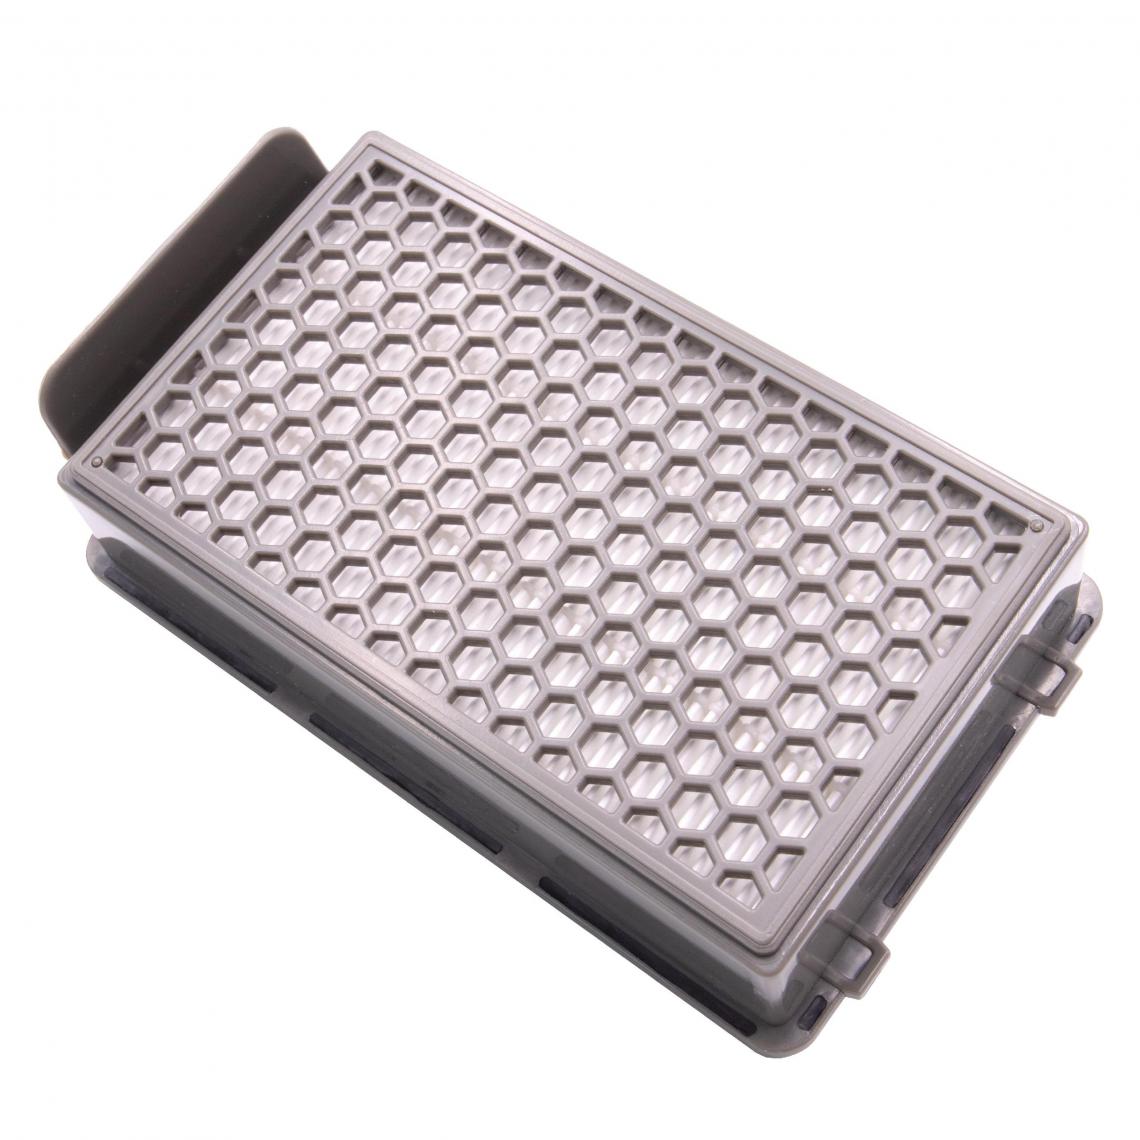 Vhbw - vhbw Filtre d'aspirateur compatible avec Samurai SG3751, SG3751WA, SG3751WA / 4Q0 aspirateur - Filtre HEPA contre les allergies - Accessoire entretien des sols